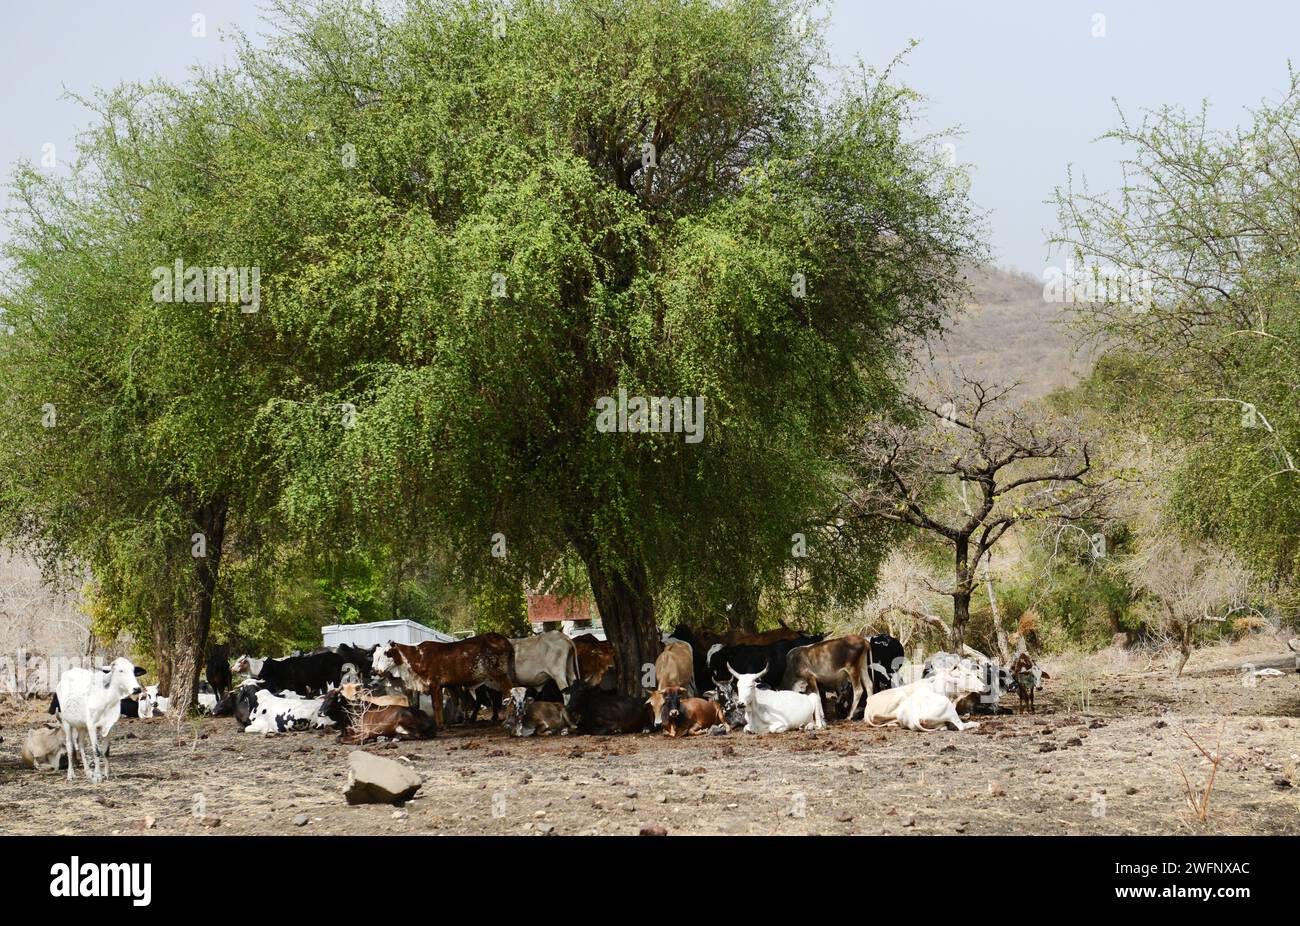 Eine Rinderherde, die sich im Schatten versteckt, während die Temperaturen steigen. Region Humera im Nordwesten Äthiopiens. Stockfoto